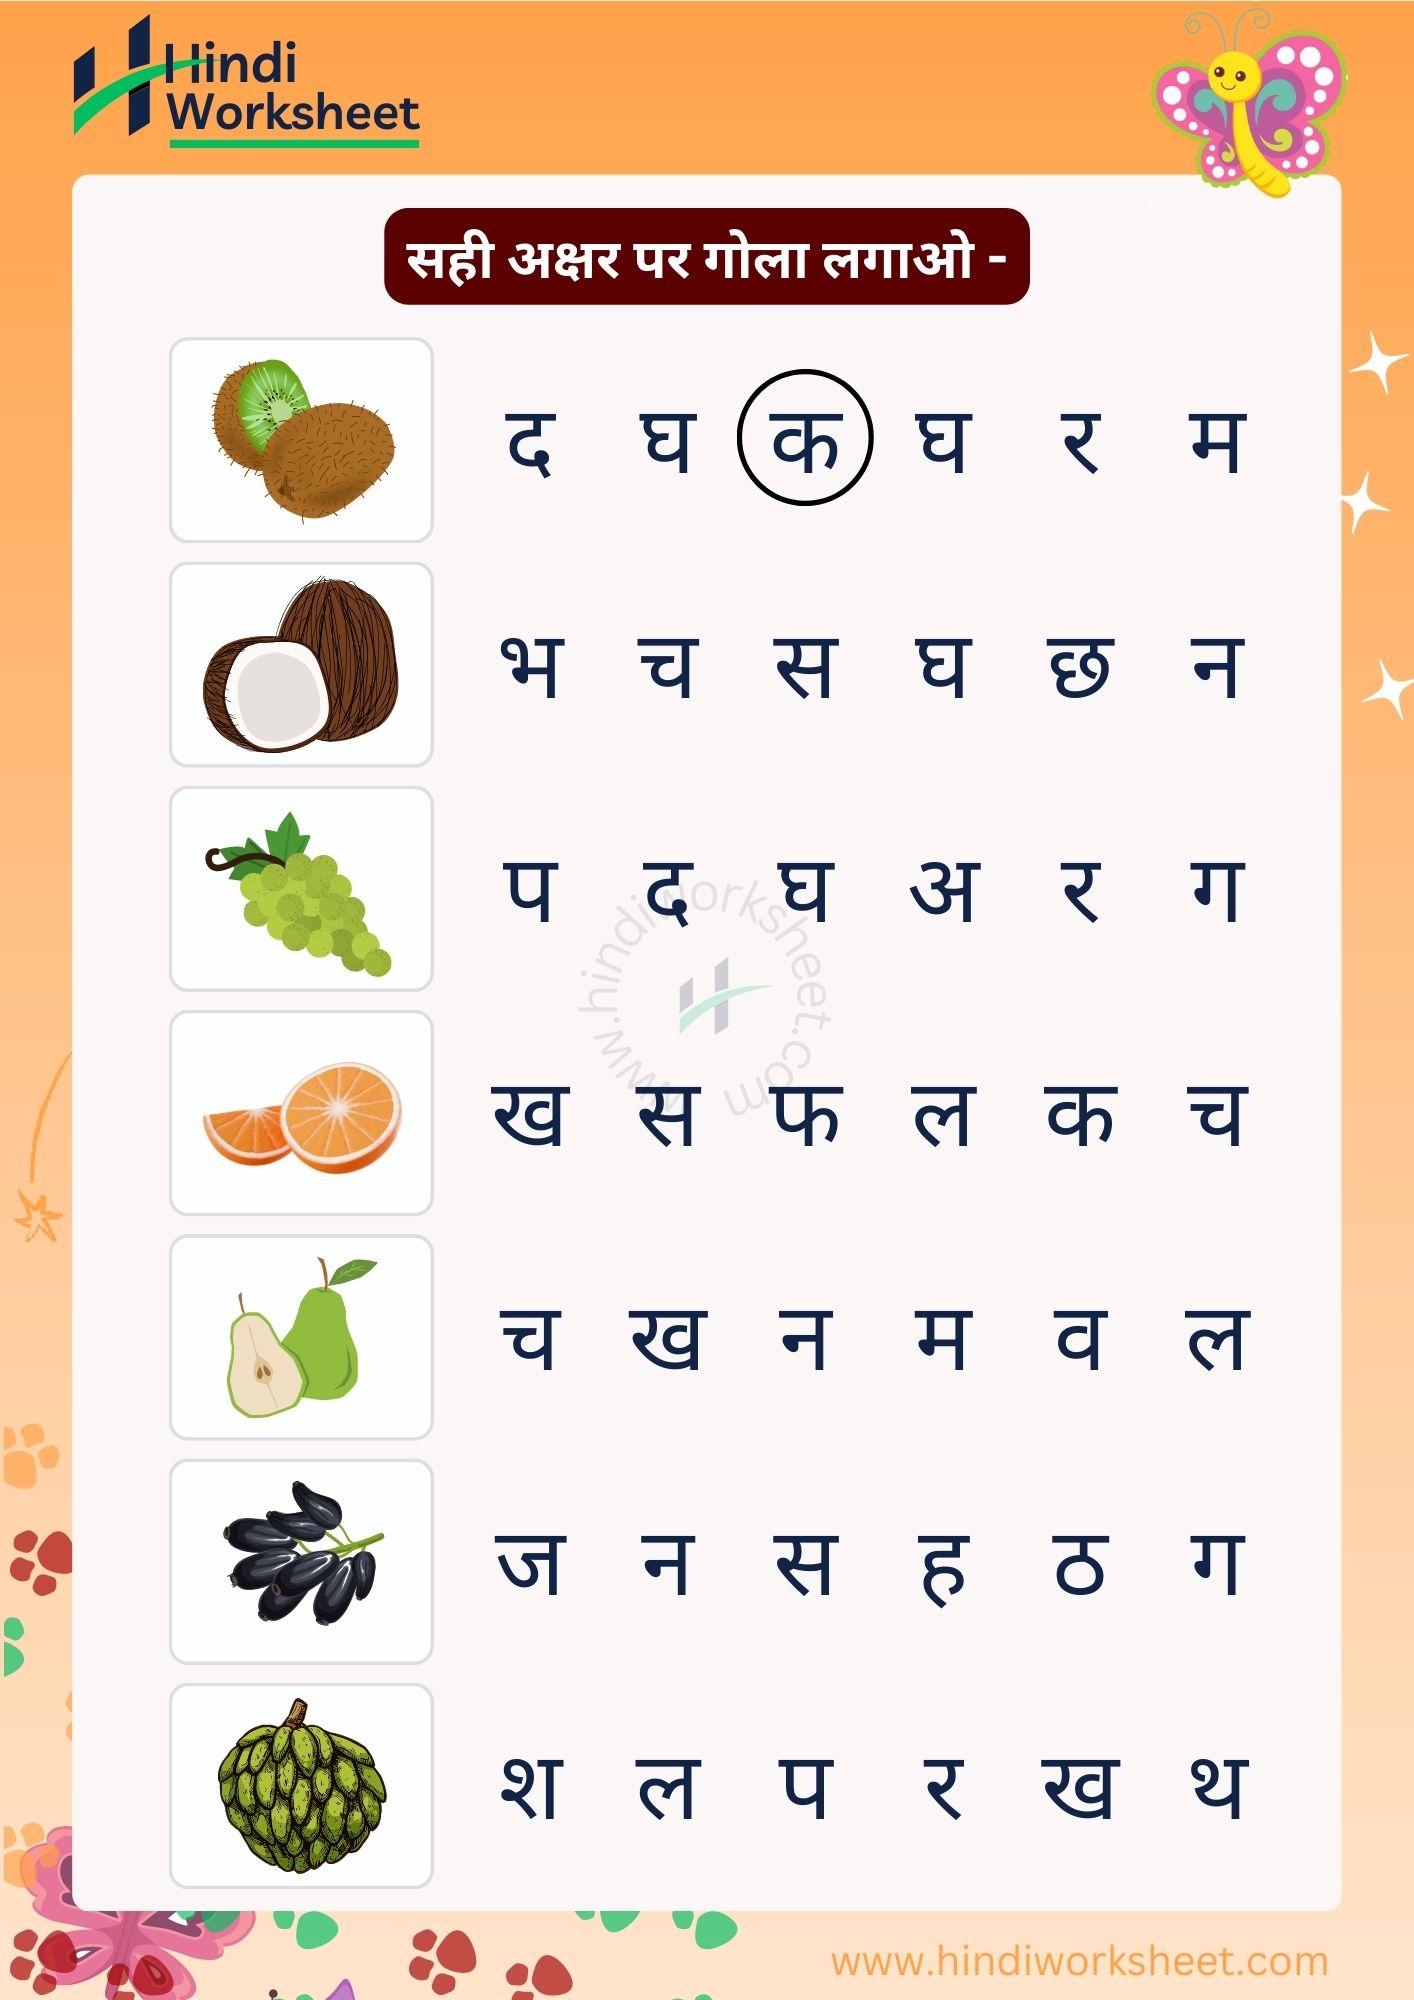 hindi-worksheet-for-lkg-students